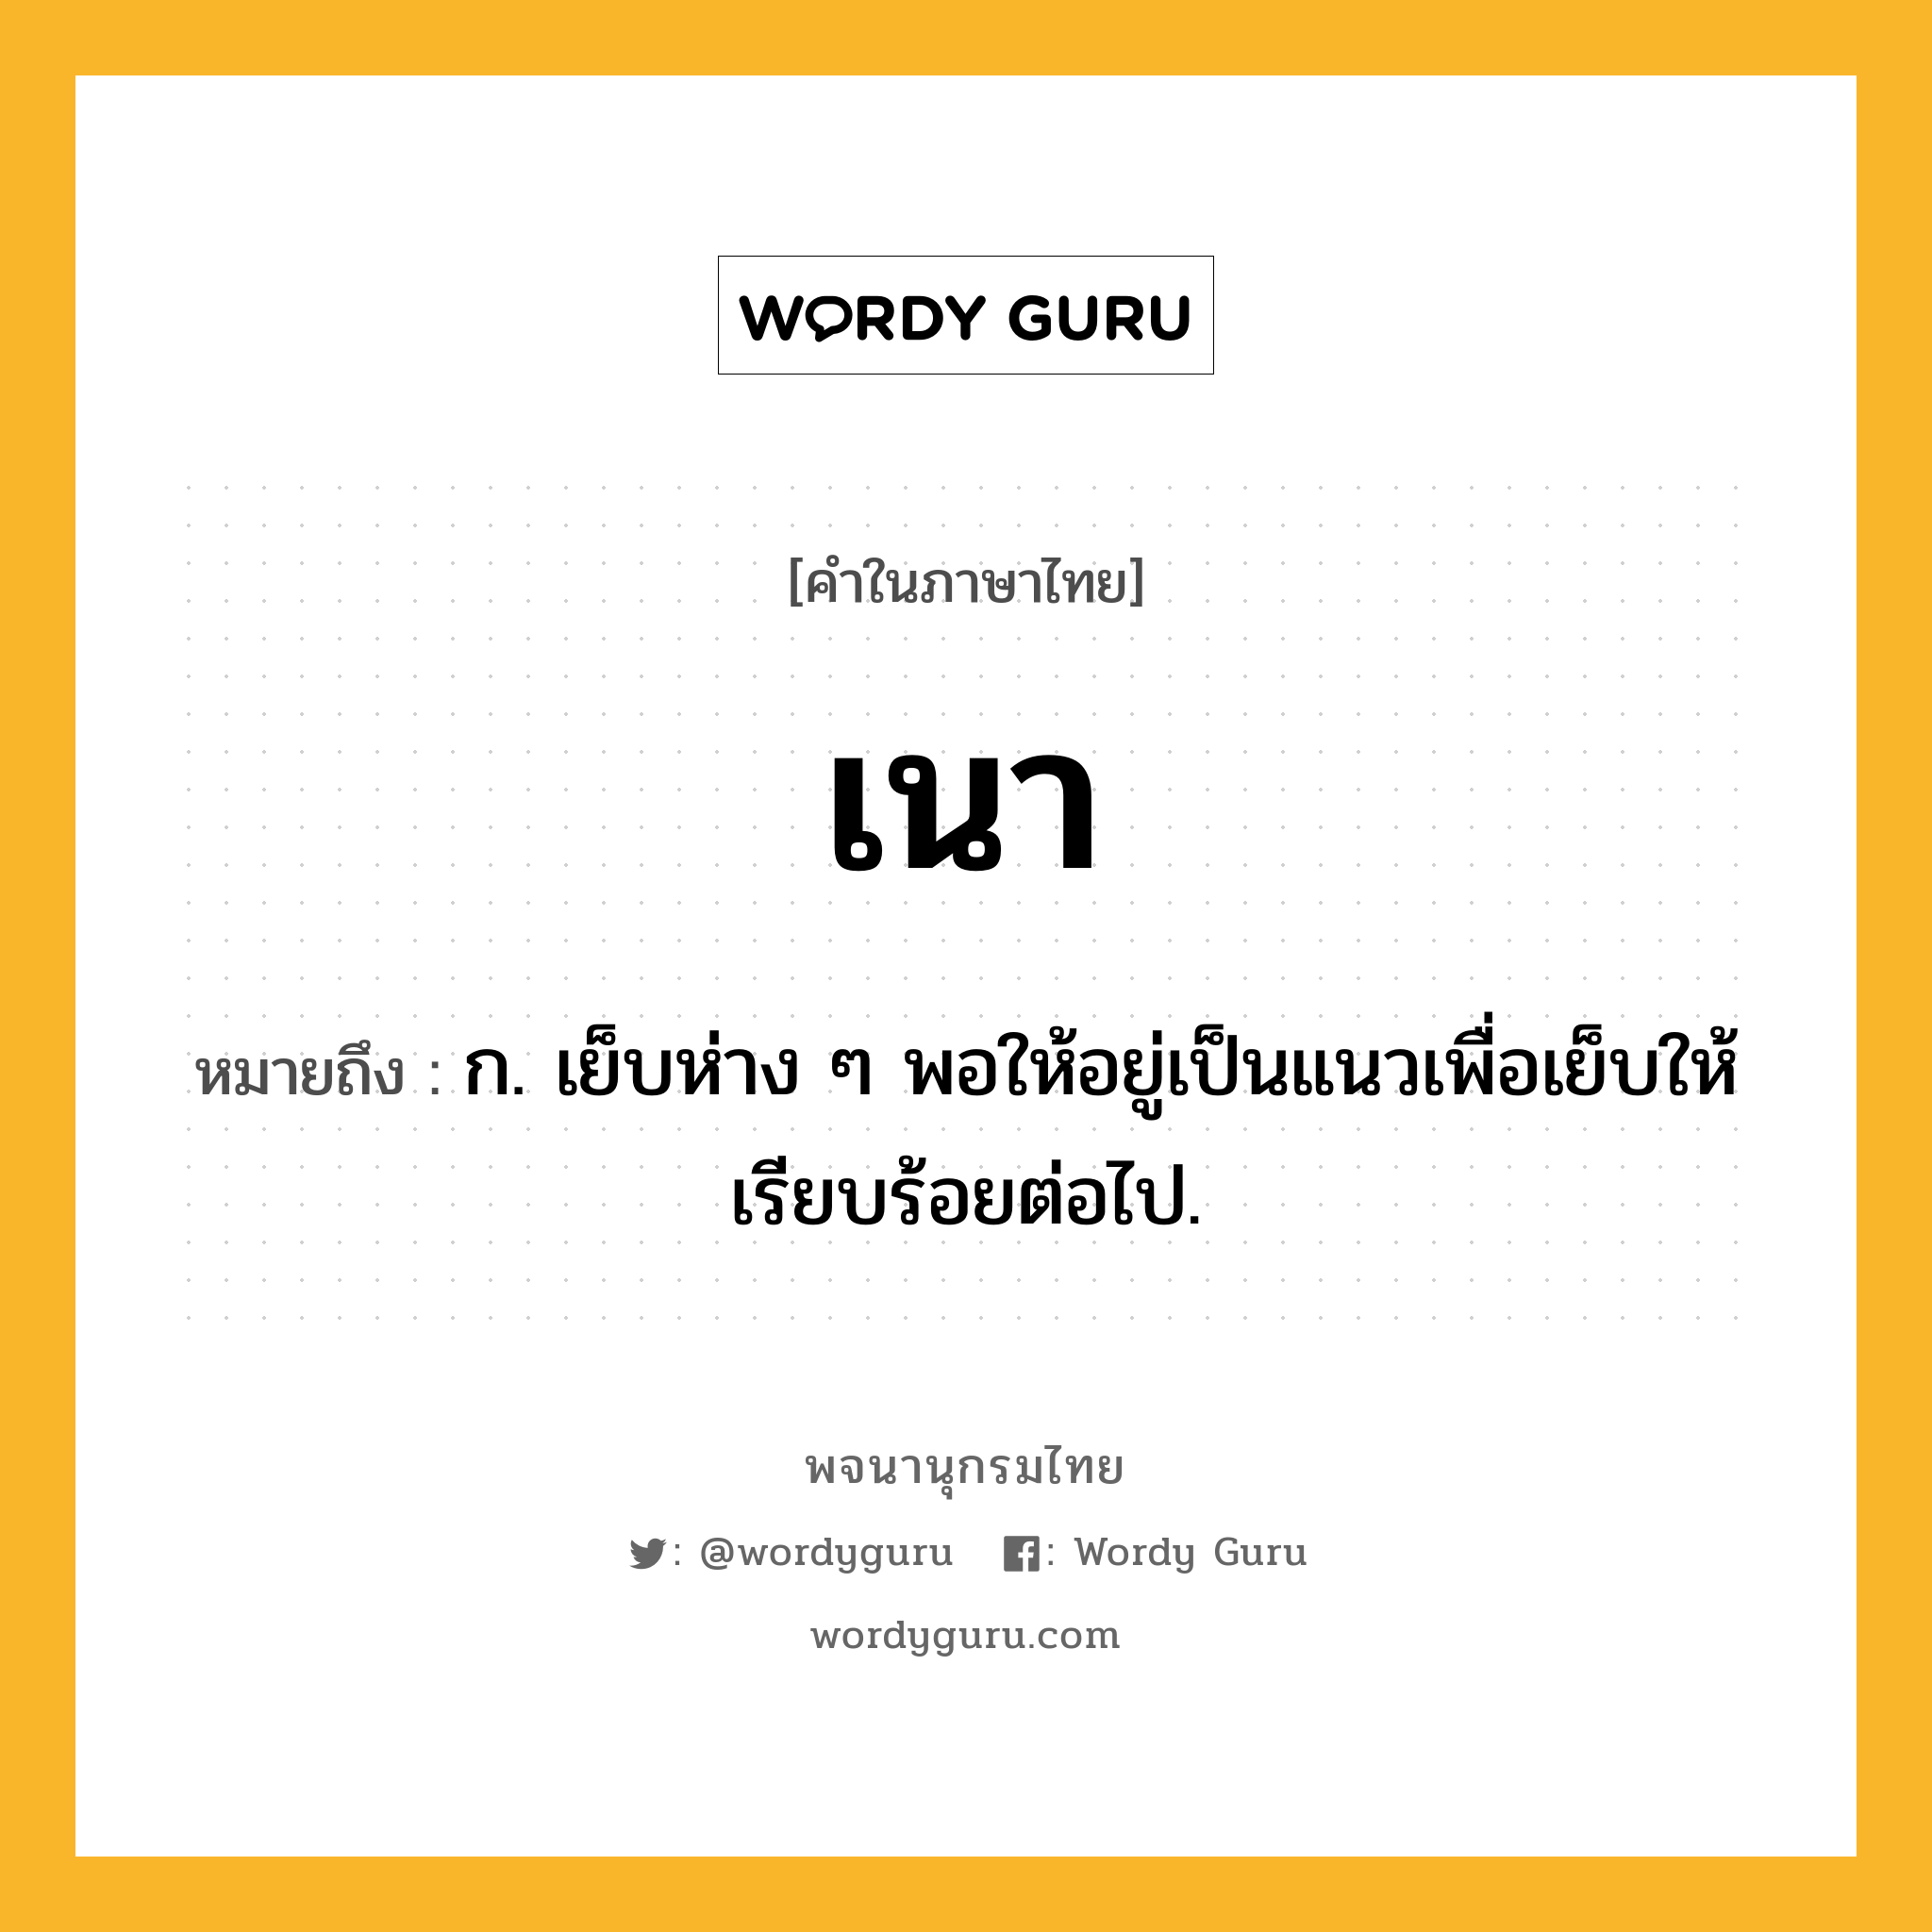 เนา ความหมาย หมายถึงอะไร?, คำในภาษาไทย เนา หมายถึง ก. เย็บห่าง ๆ พอให้อยู่เป็นแนวเพื่อเย็บให้เรียบร้อยต่อไป.